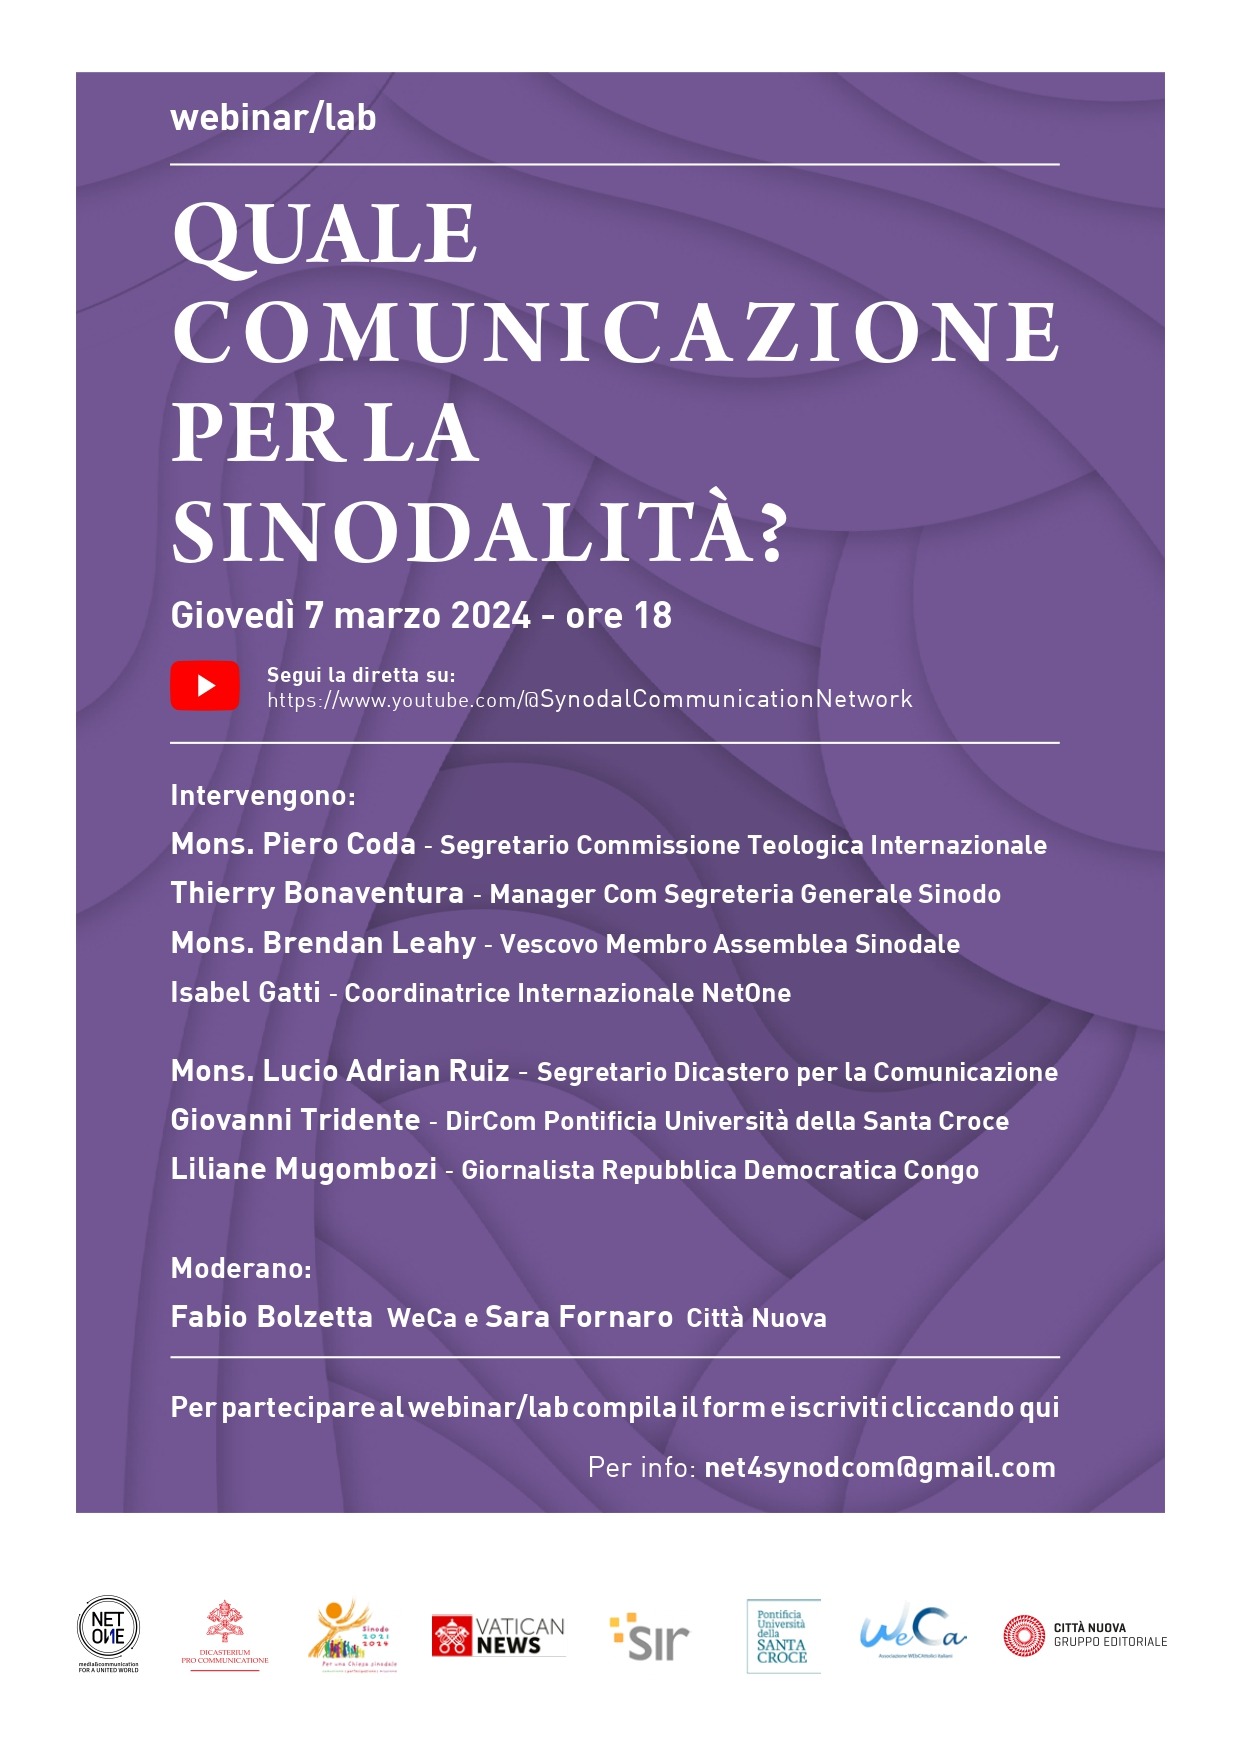 Webinar/Lab: "Quale comunicazione per la sinodalità?" 7 marzo 2024 ore 18.00